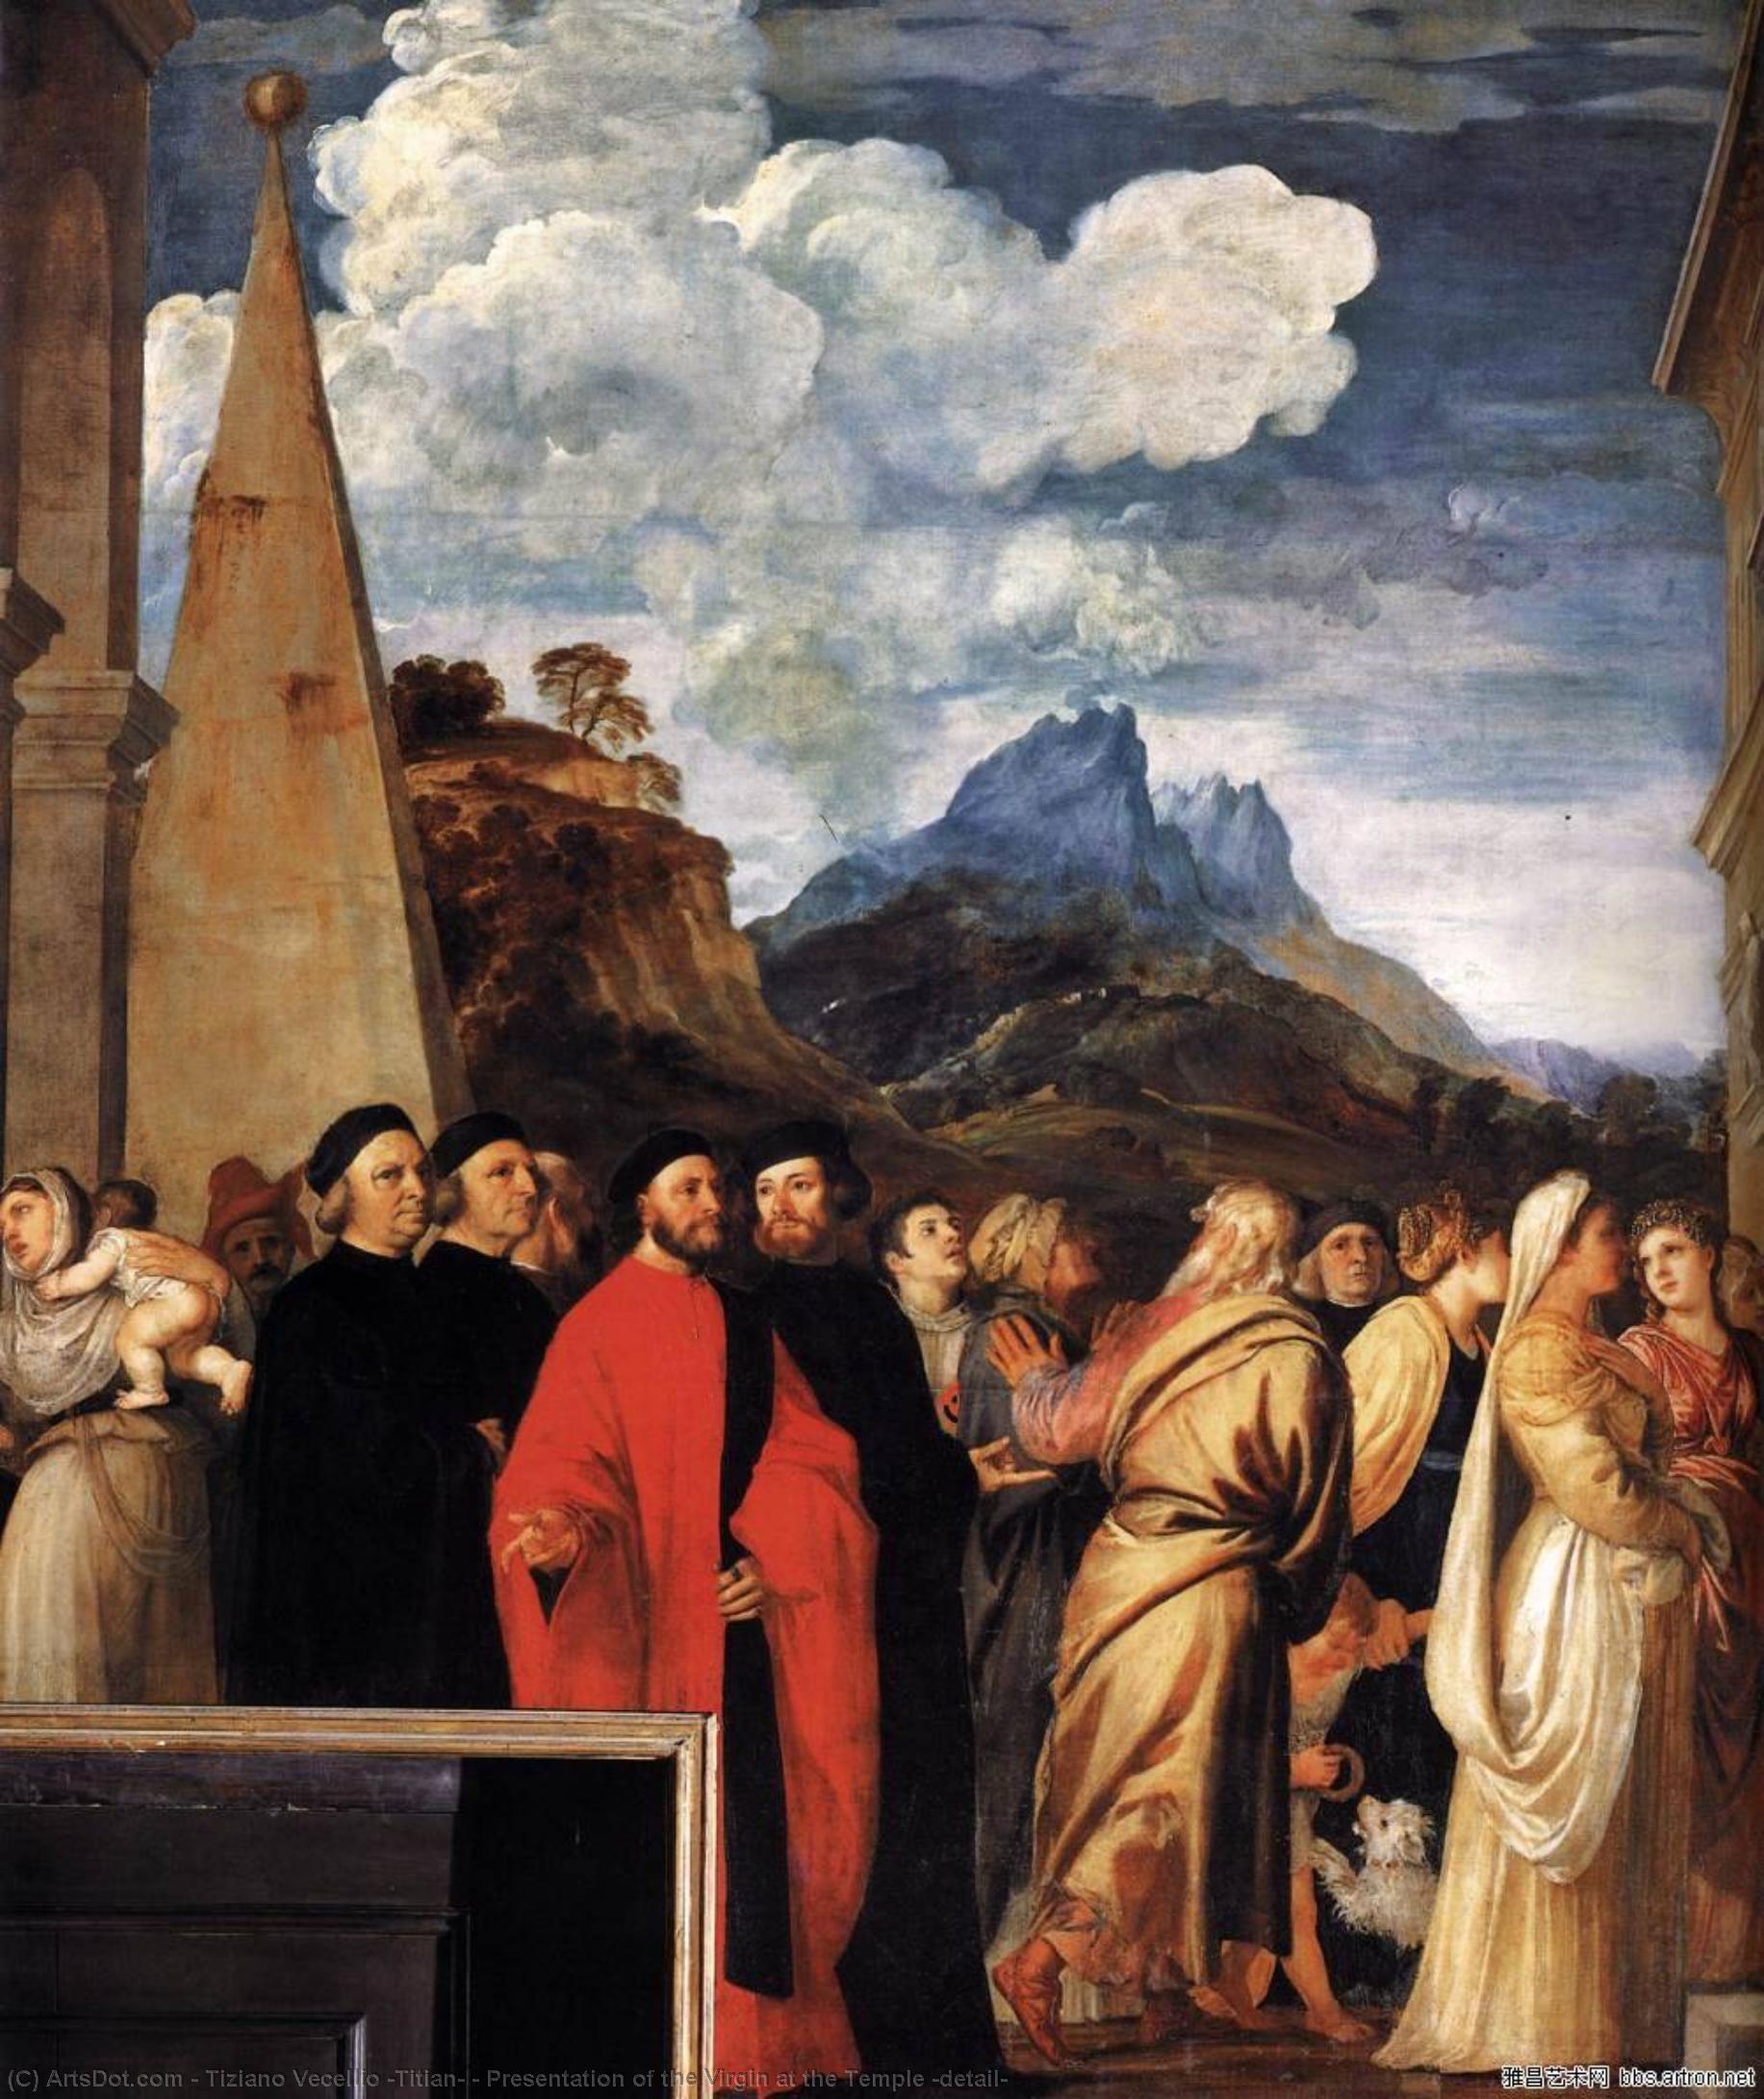 顺序 手工油畫 圣母在圣殿的介绍(详细介绍), 1534 通过 Tiziano Vecellio (Titian) (1490-1576, Italy) | ArtsDot.com